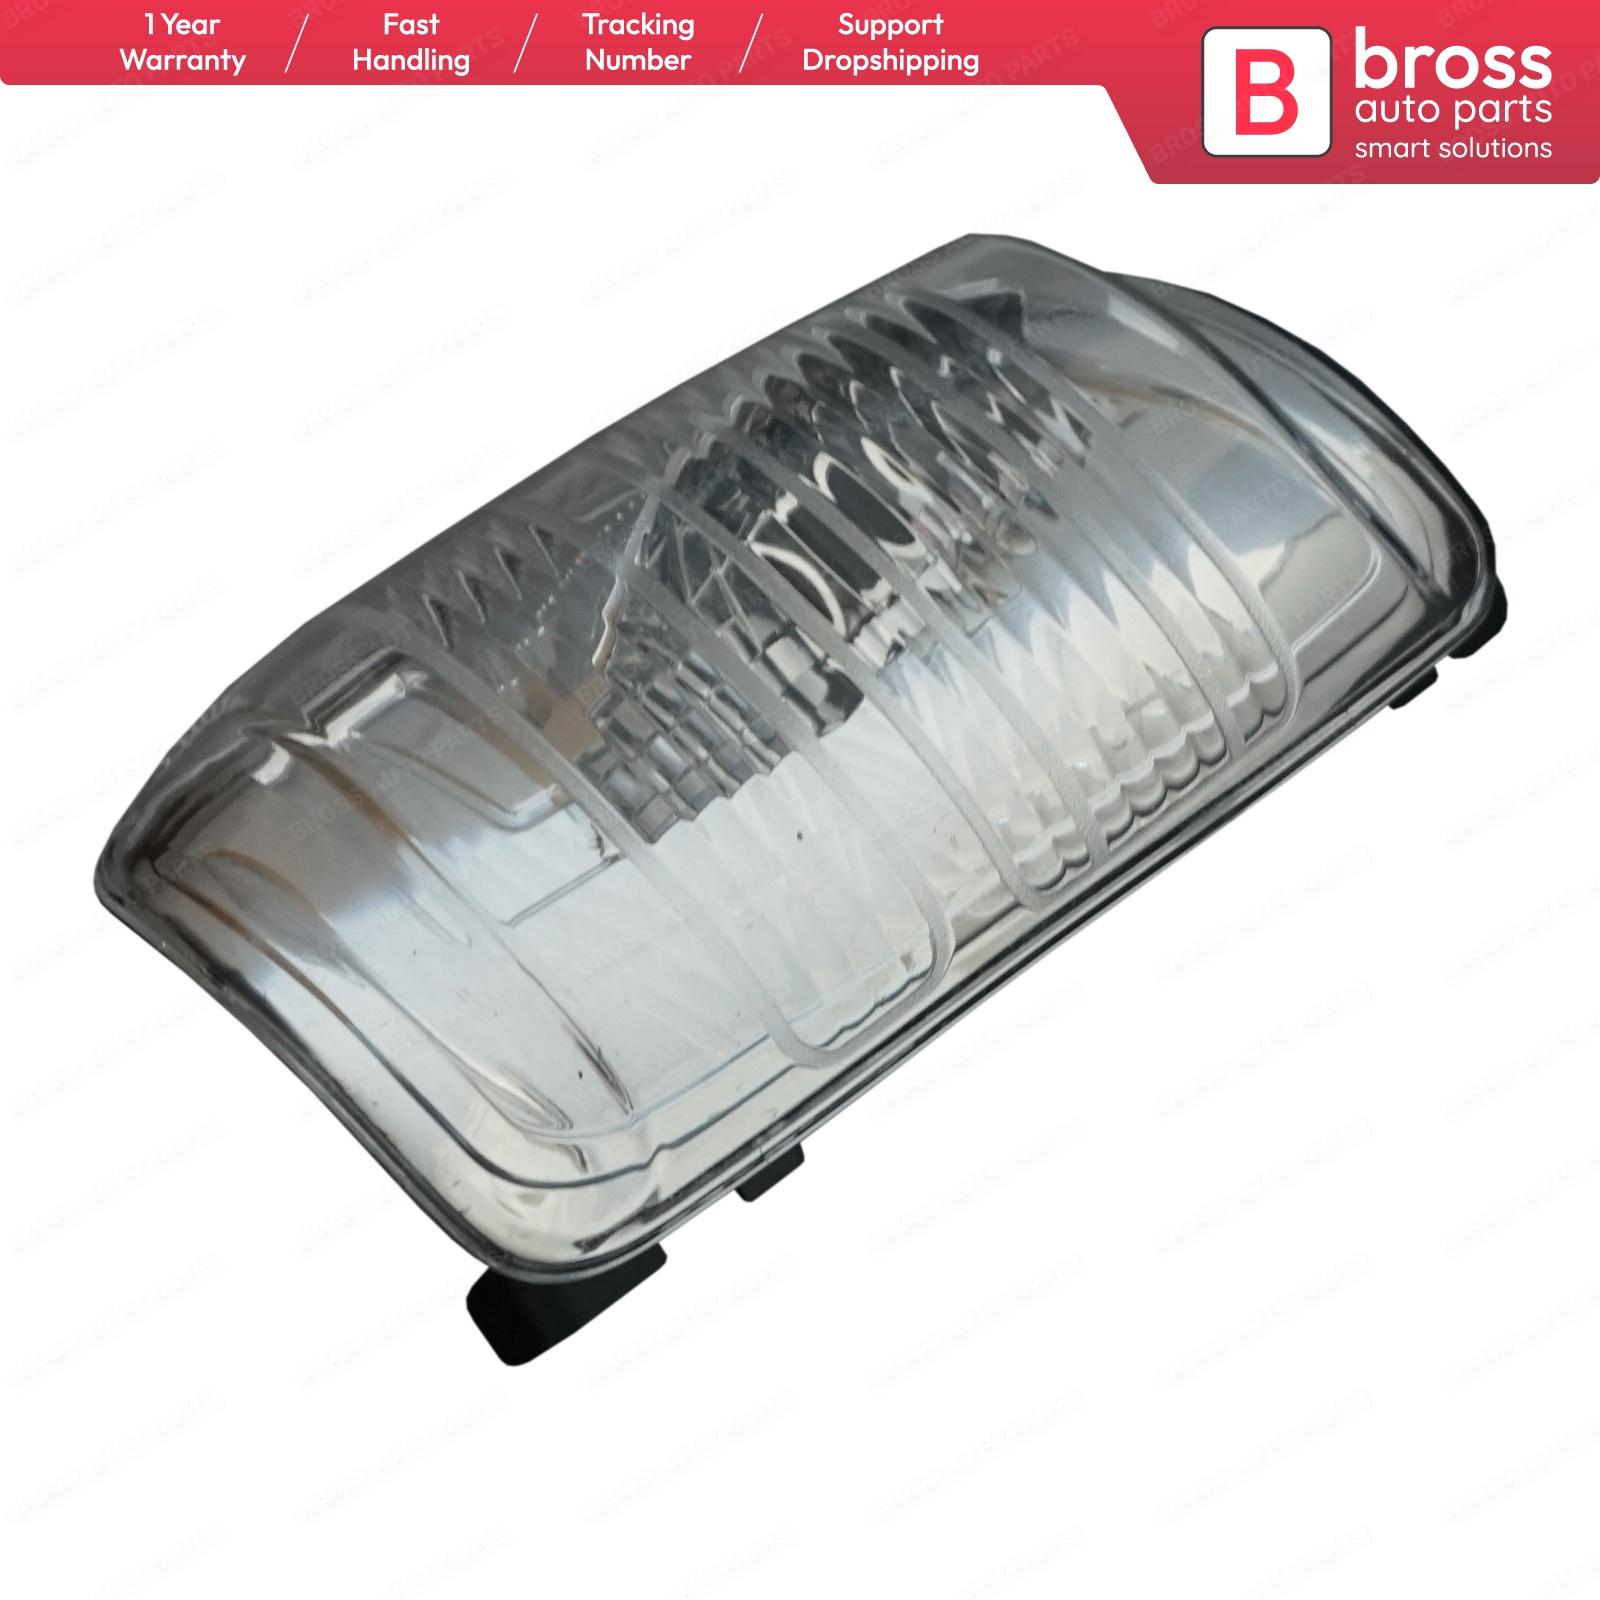 Изображение товара: Bross BSP594-2 Боковая дверь крыло зеркало белый индикатор лампы объектив 1847389; BK31 13 B382 BB правый для Ford Transit 2013-On